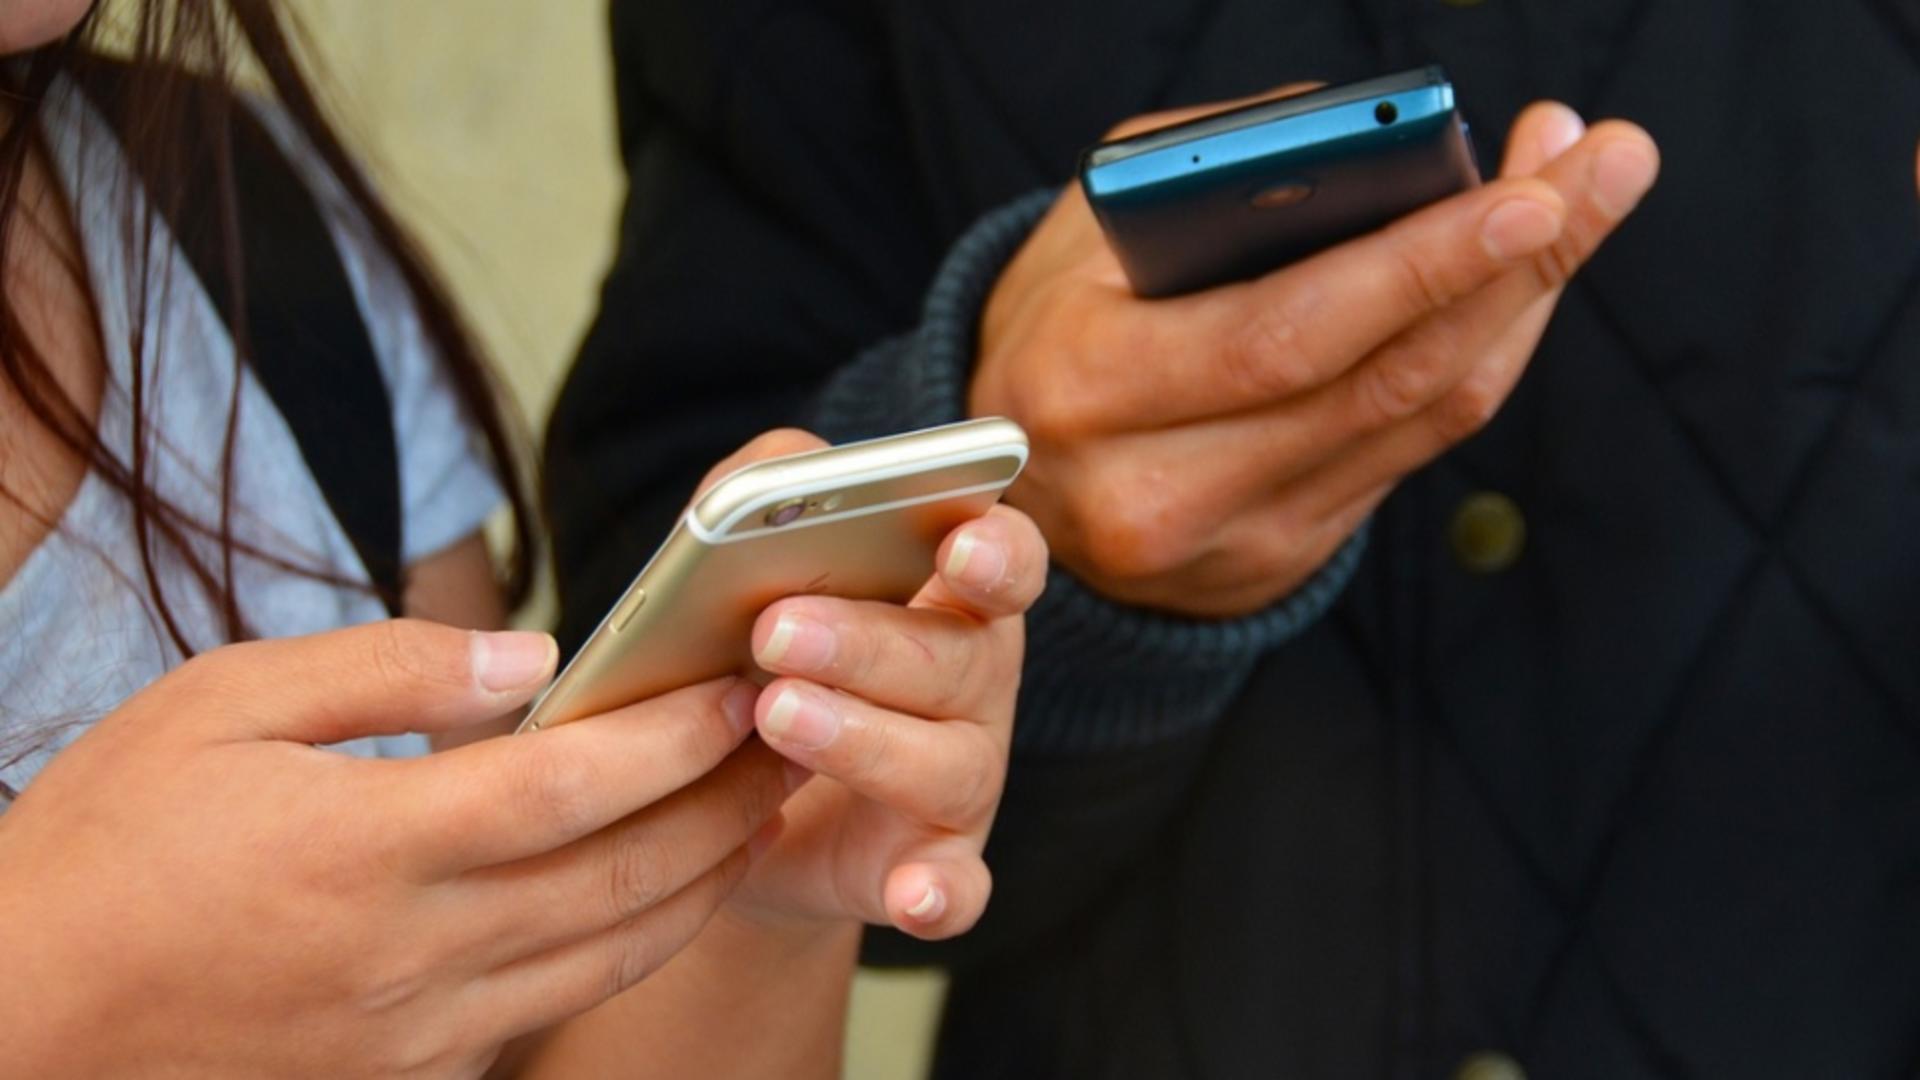 Alertă de securitate pentru telefoanele mobile: au fost descoperite vulnerabilități cu riscuri majore